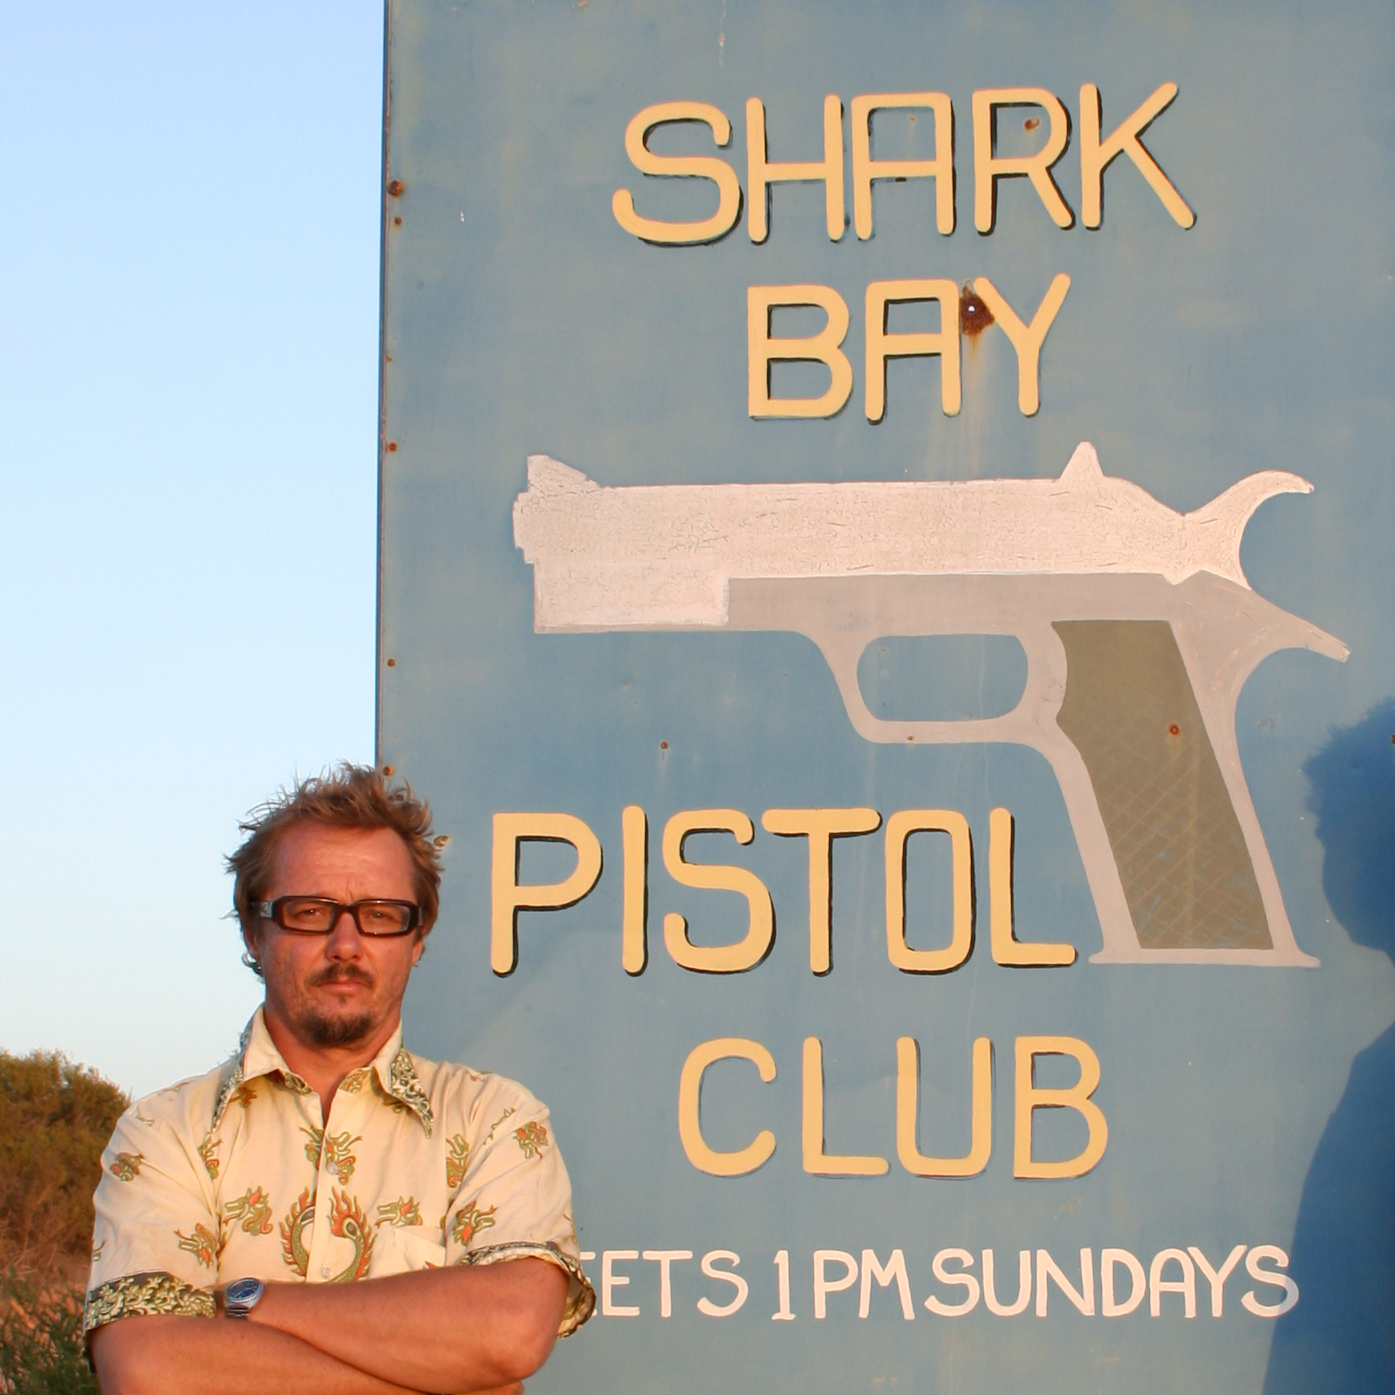 [shark+bay+pistol+club.jpg]